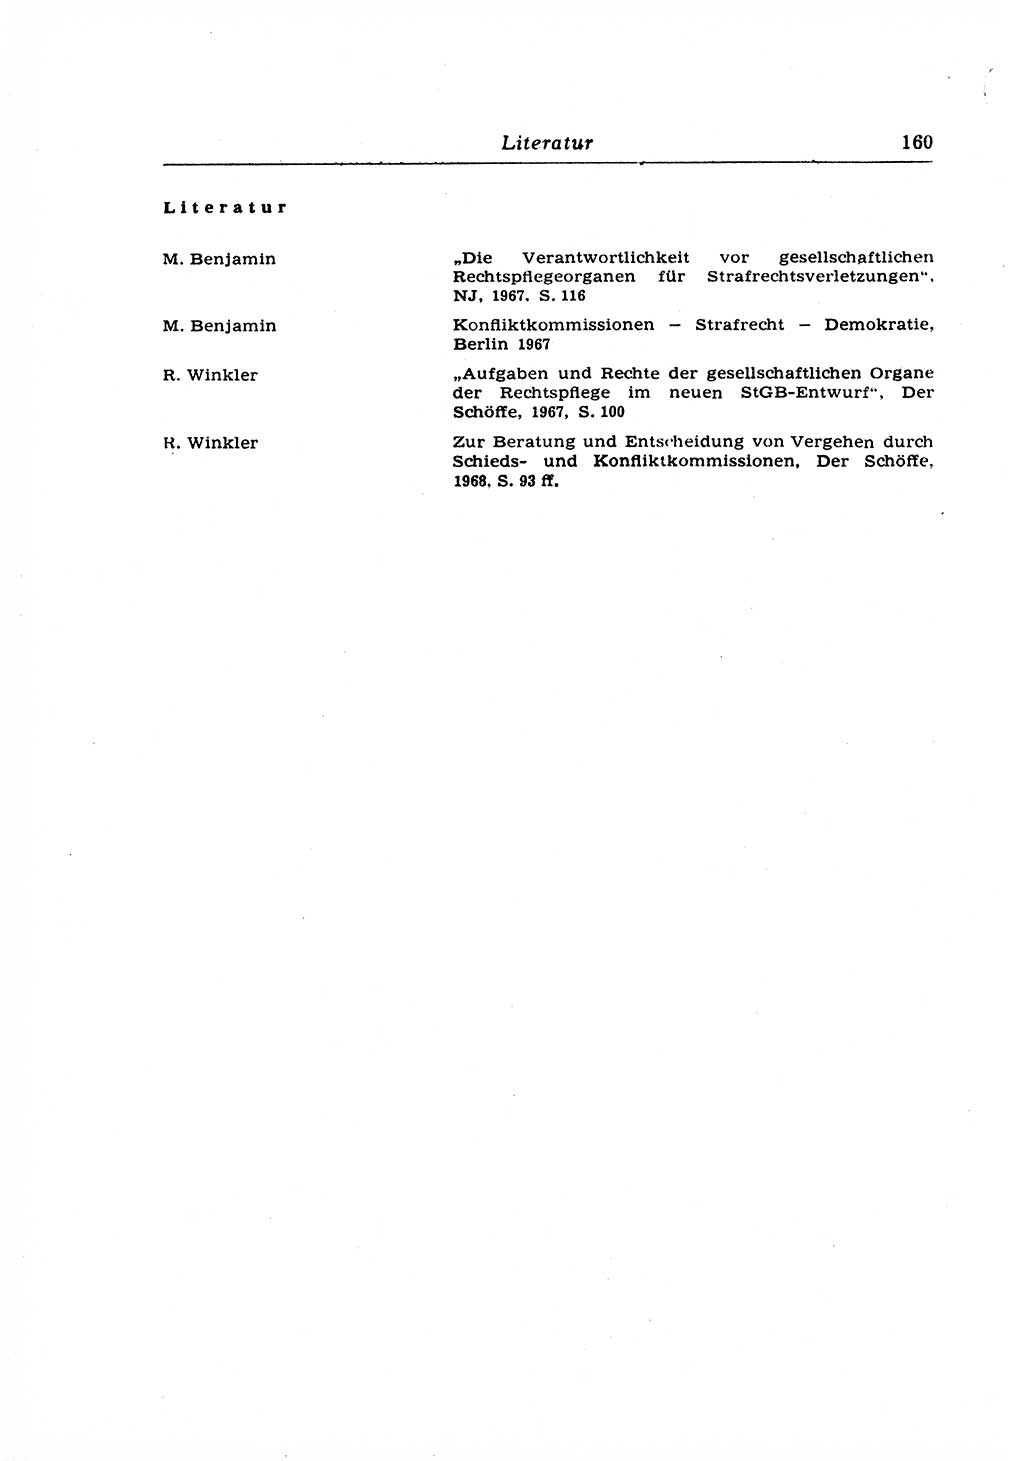 Strafrecht der Deutschen Demokratischen Republik (DDR), Lehrkommentar zum Strafgesetzbuch (StGB), Allgemeiner Teil 1969, Seite 160 (Strafr. DDR Lehrkomm. StGB AT 1969, S. 160)